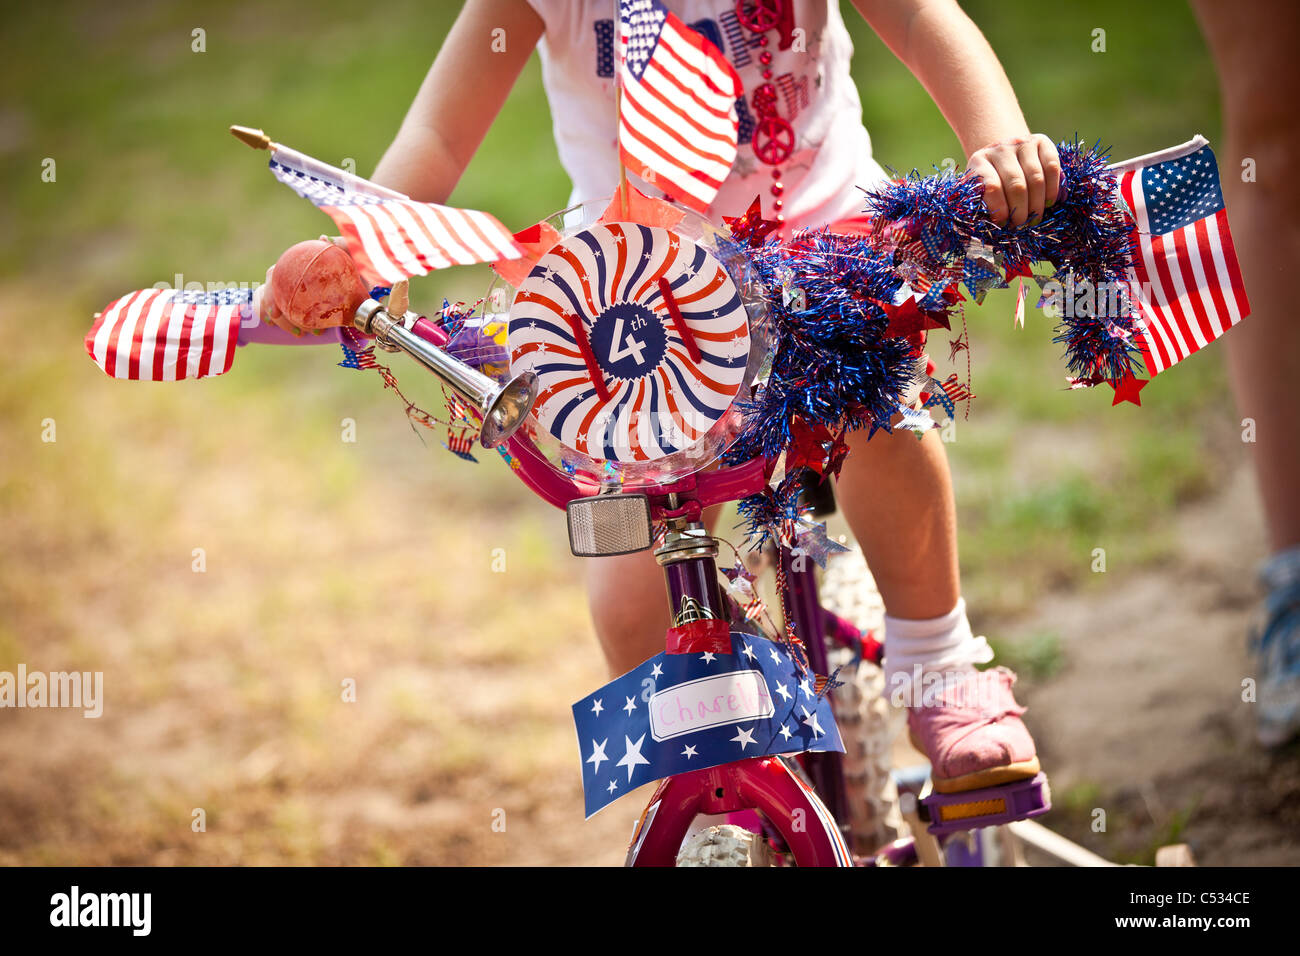 Ein Fahrrad in patriotischen Themen während der I'On Gemeinschaft gehalten 4. Juli Parade. Stockfoto